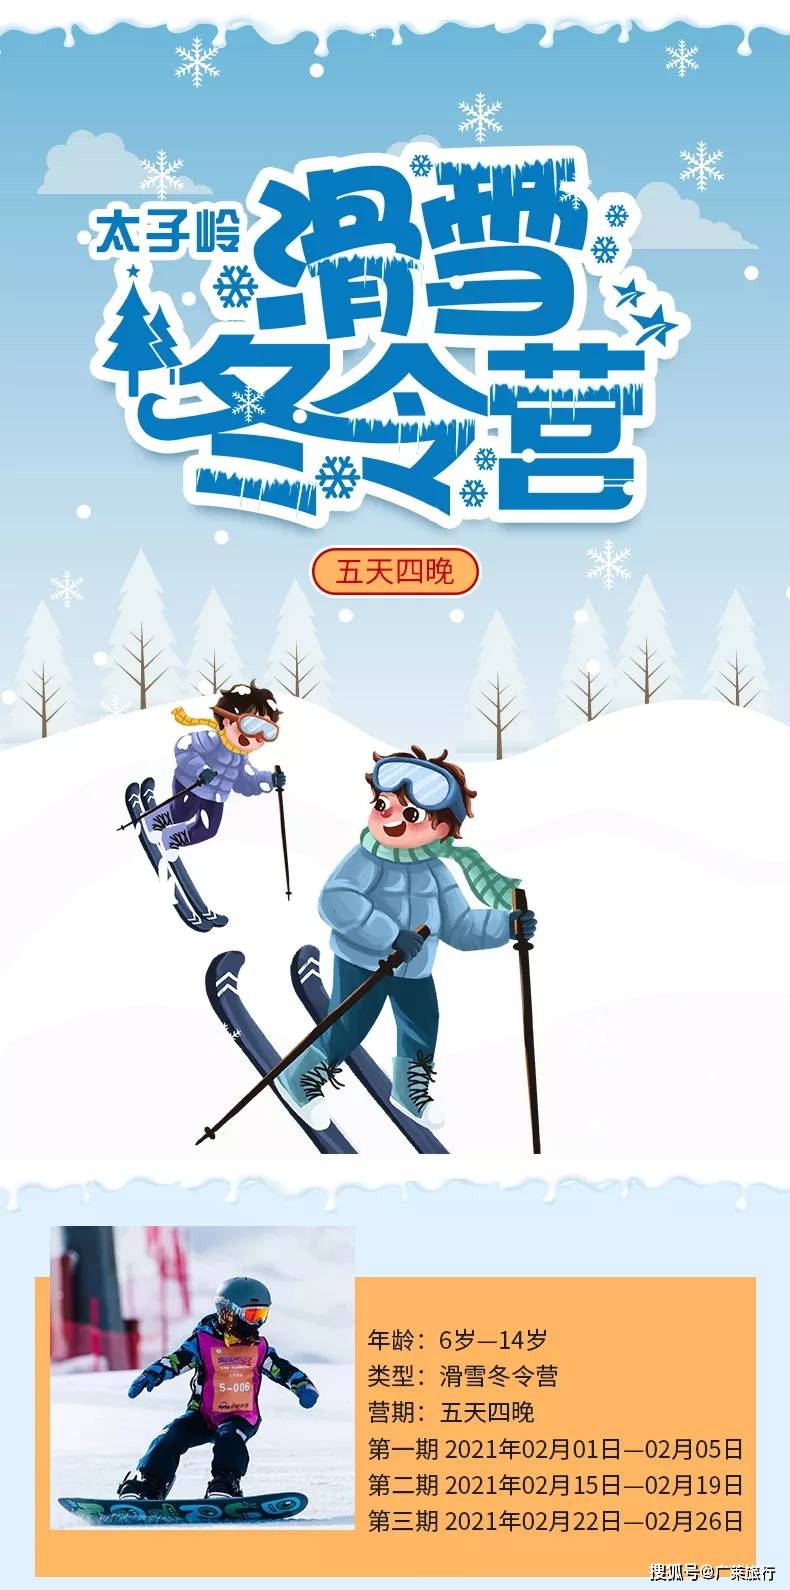 送孩子单飞去滑雪！九鼎山太子岭滑雪冬令营来啦！！五天四夜！